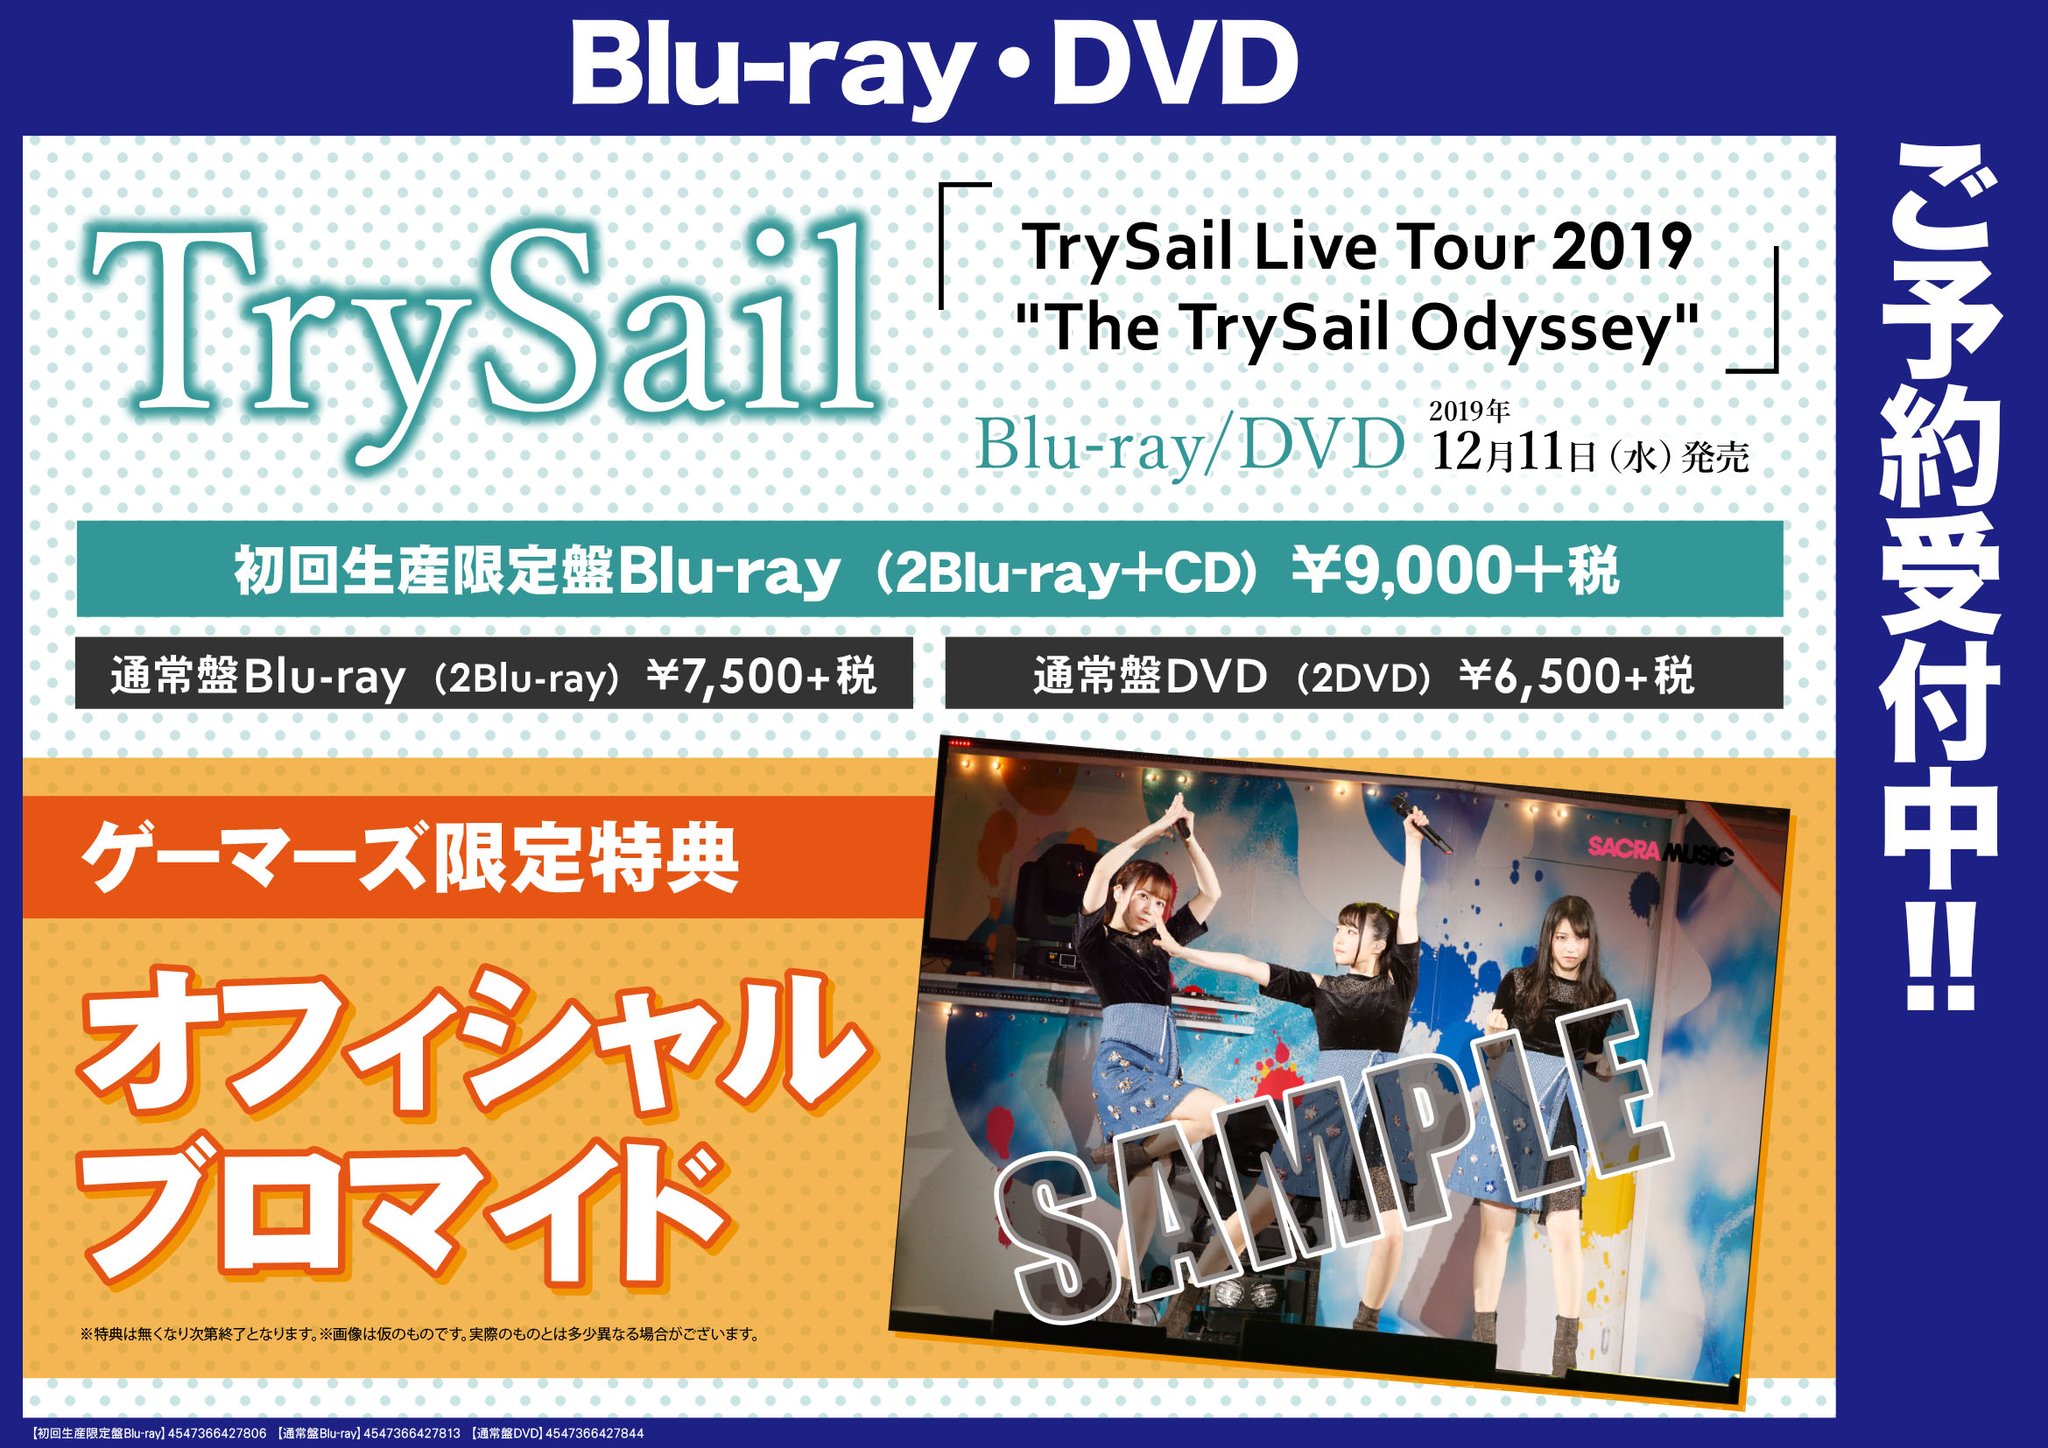 ゲーマーズなんば店 V Twitter 特典解禁 予約受付中の Trysail Live Tour 19 The Trysail Odyssey Blu Ray Dvdのゲーマーズ限定特典 オフィシャルブロマイド の絵柄が公開されました 思わず踊りたくなってしまう このライブツアーでもお馴染みのあの